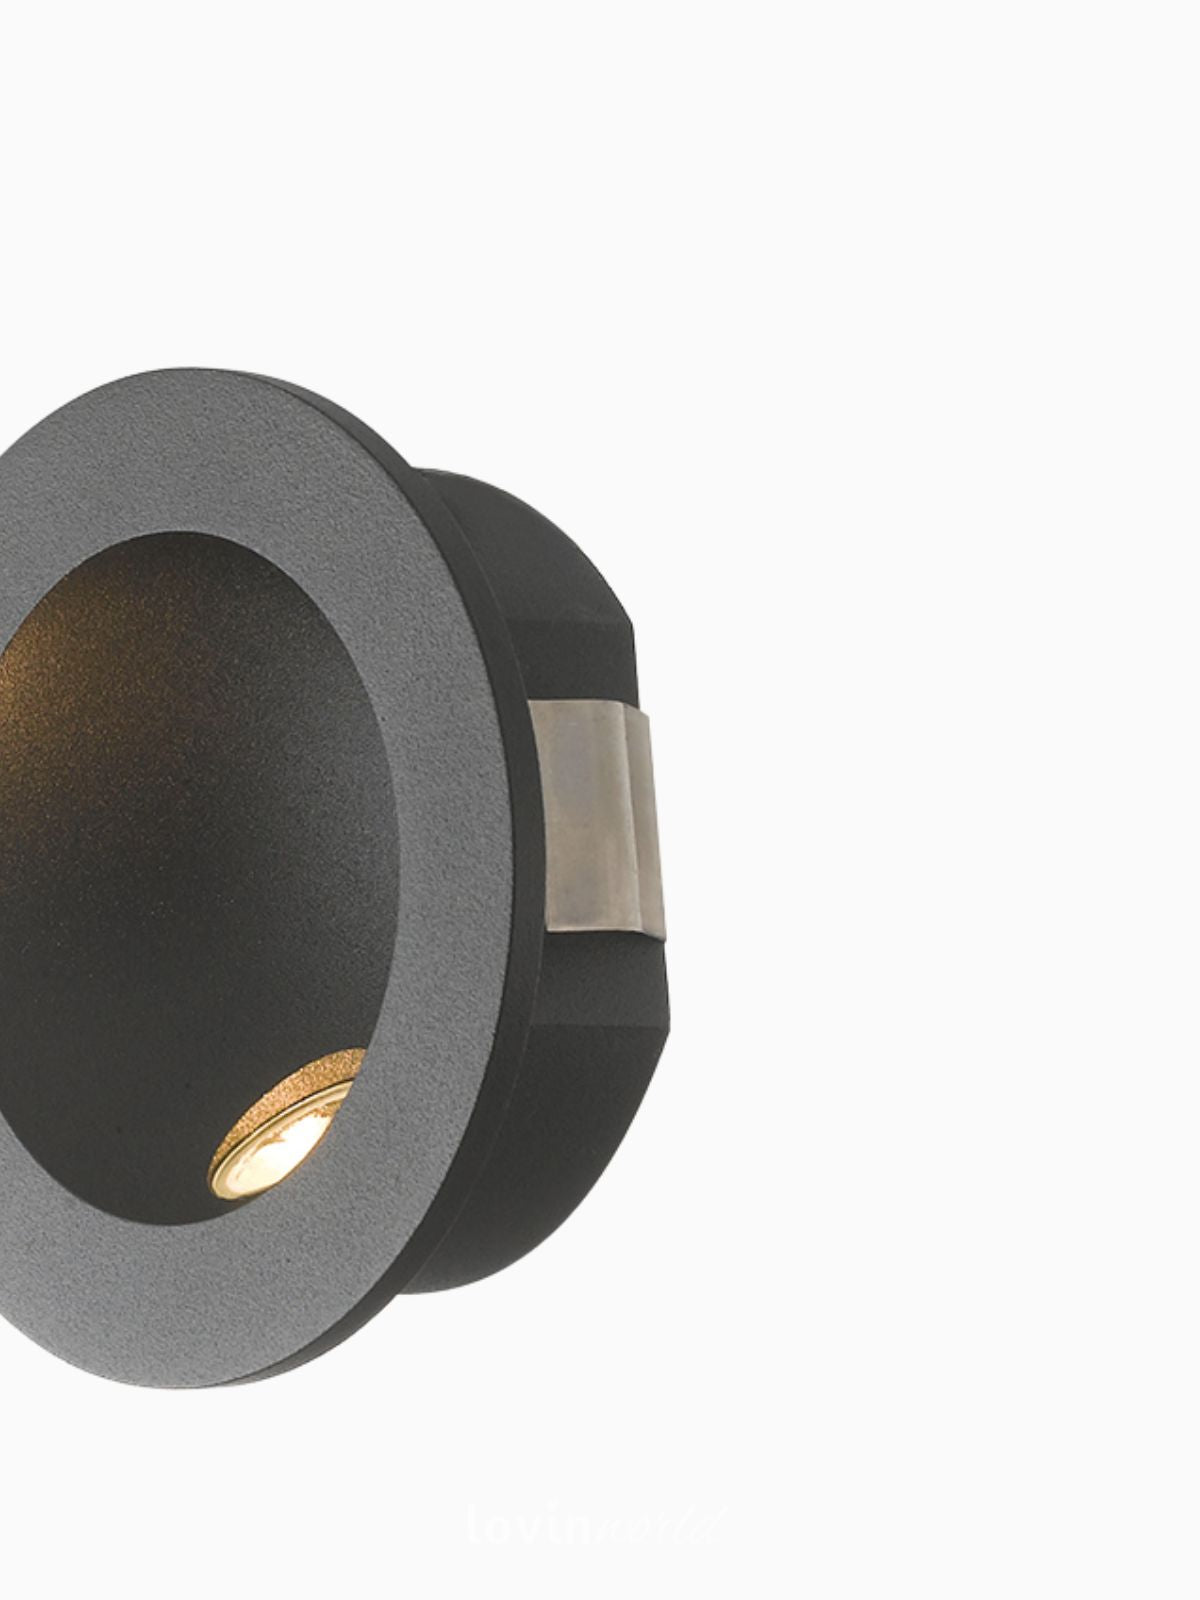 Segnapassi da esterno LED Onyx rotondo in alluminio, colore nero-2